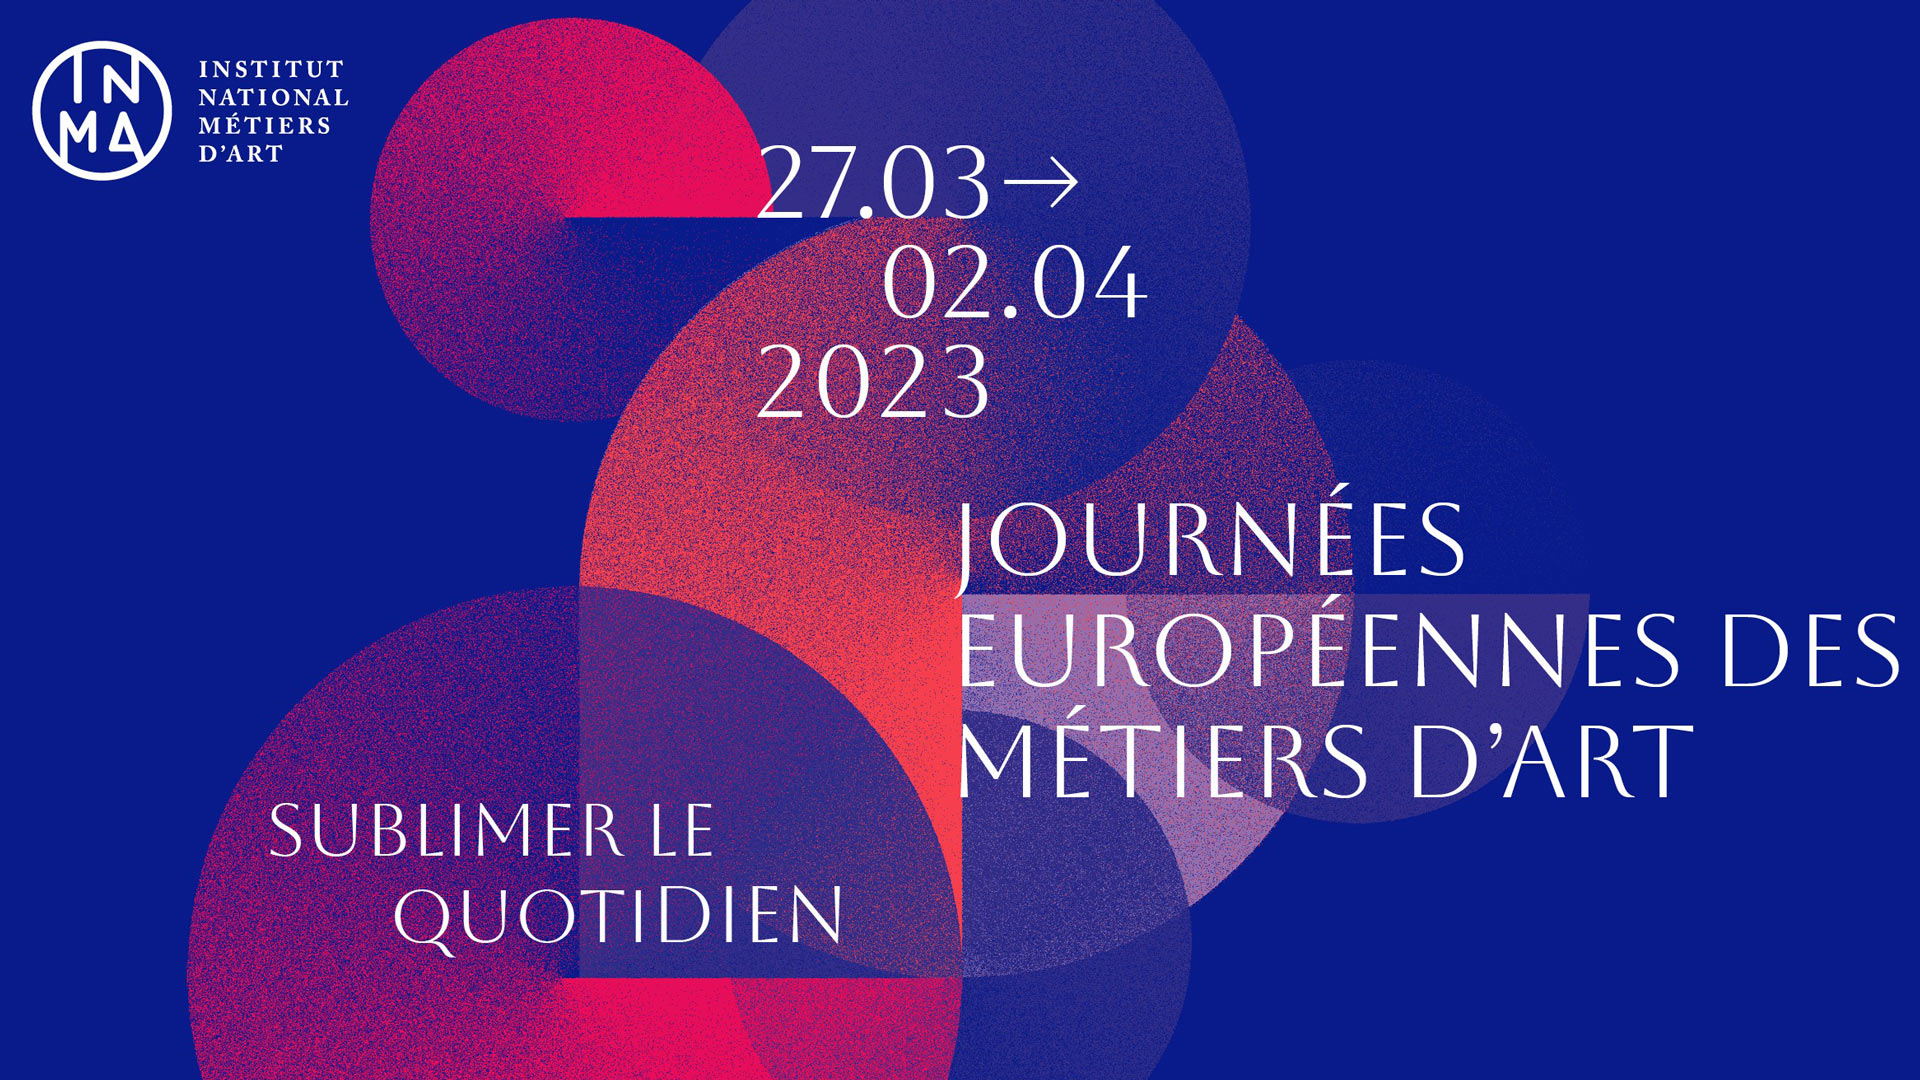 Journées européennes des métiers d’art 2023